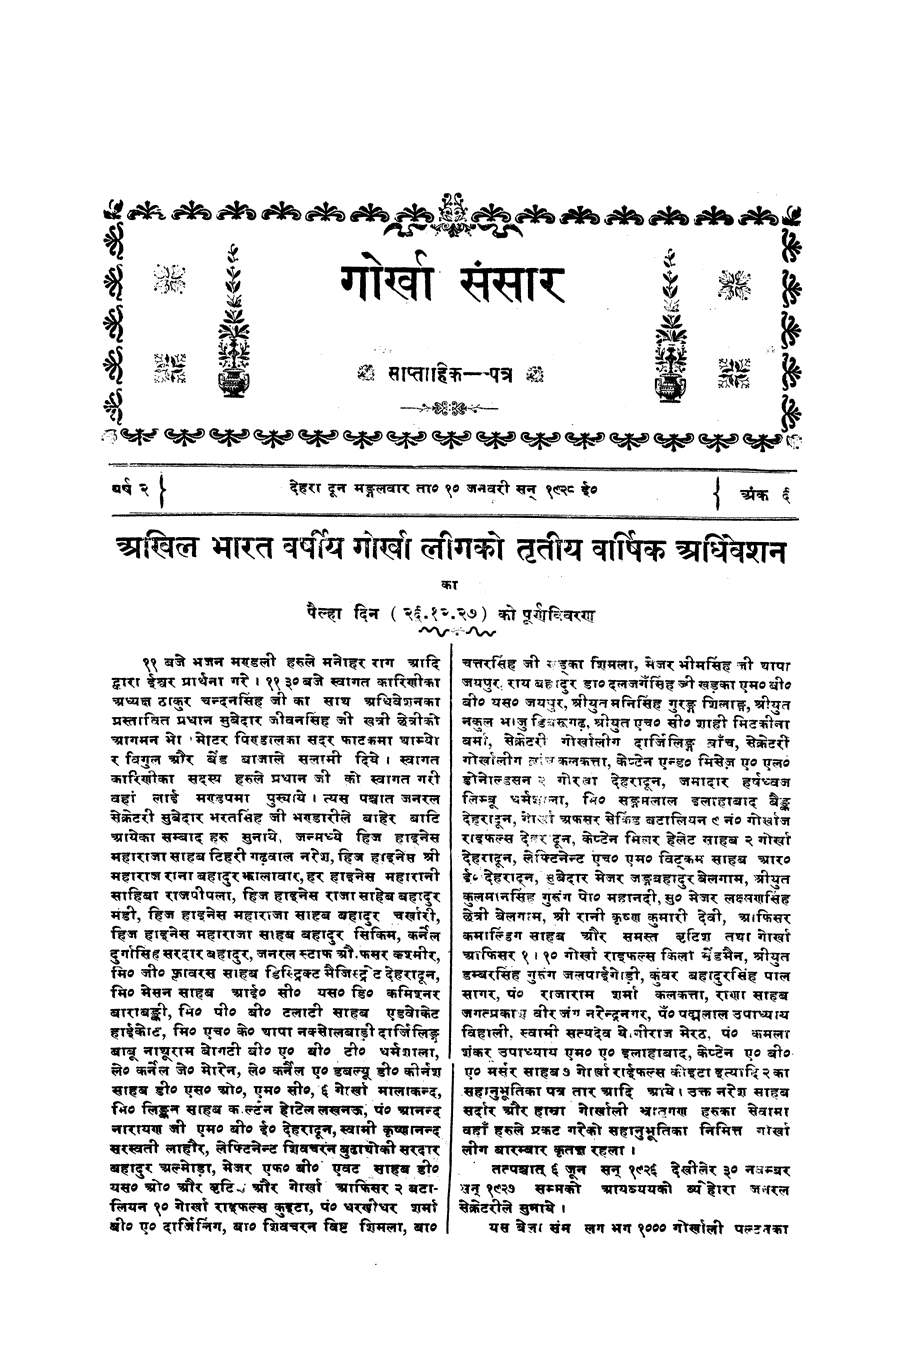 Gorkha Sansar, 10 Jan 1928, page 3